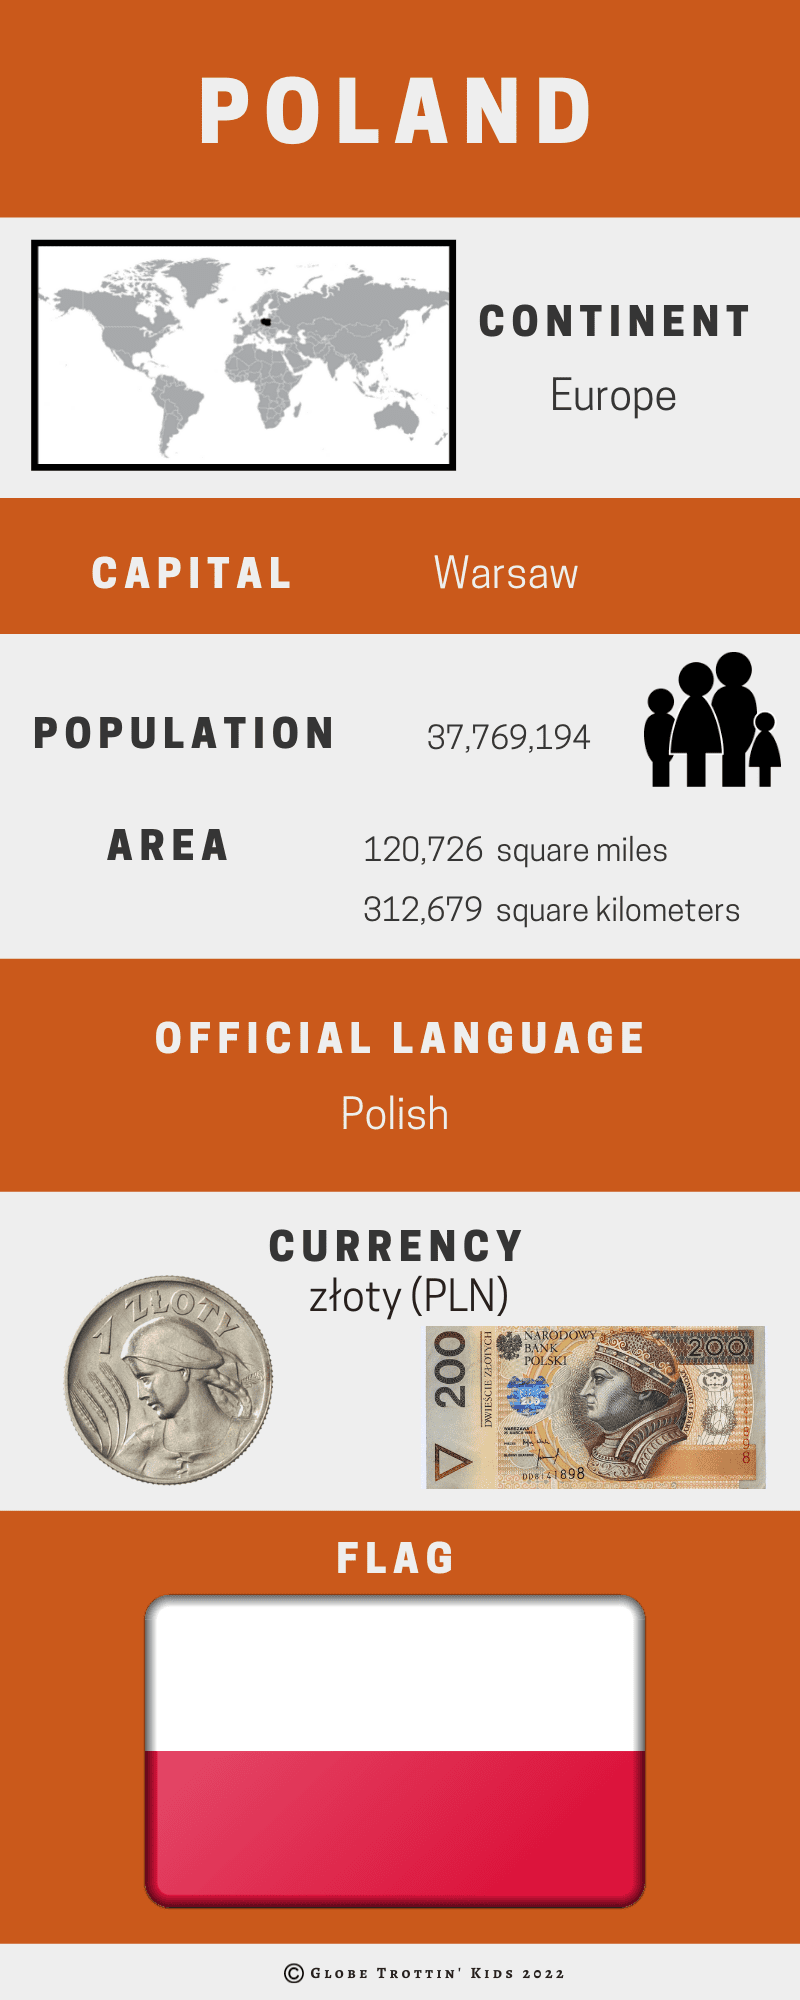 poland-infographic